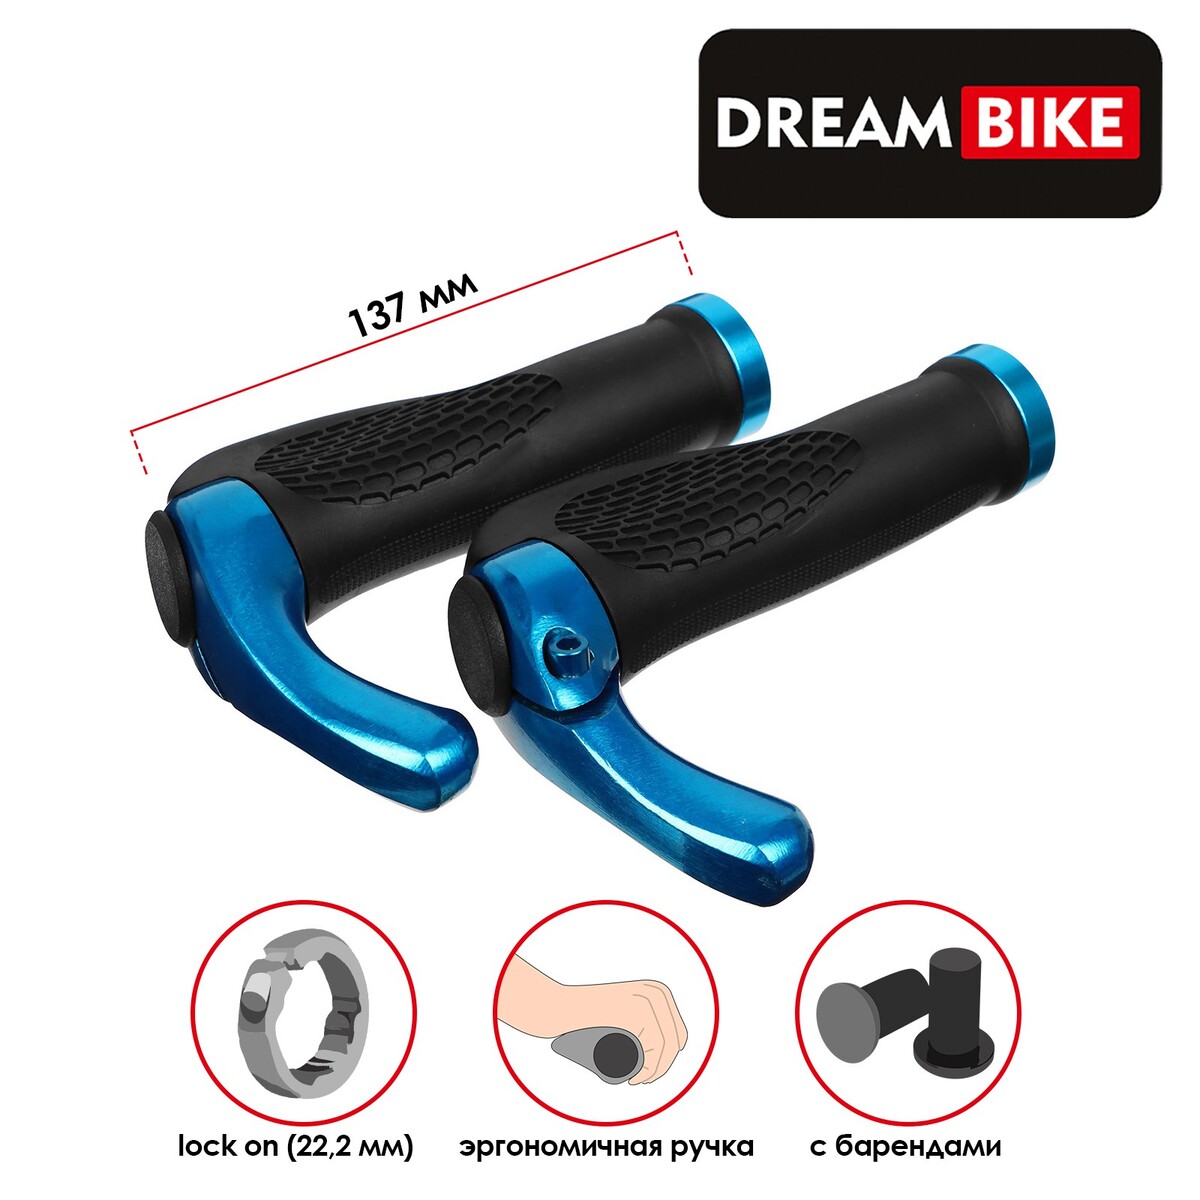 Грипсы эргономические 137 мм, dream bike, посадочный диаметр 22,2 мм, цвет чёрный/синий, Dream Bike